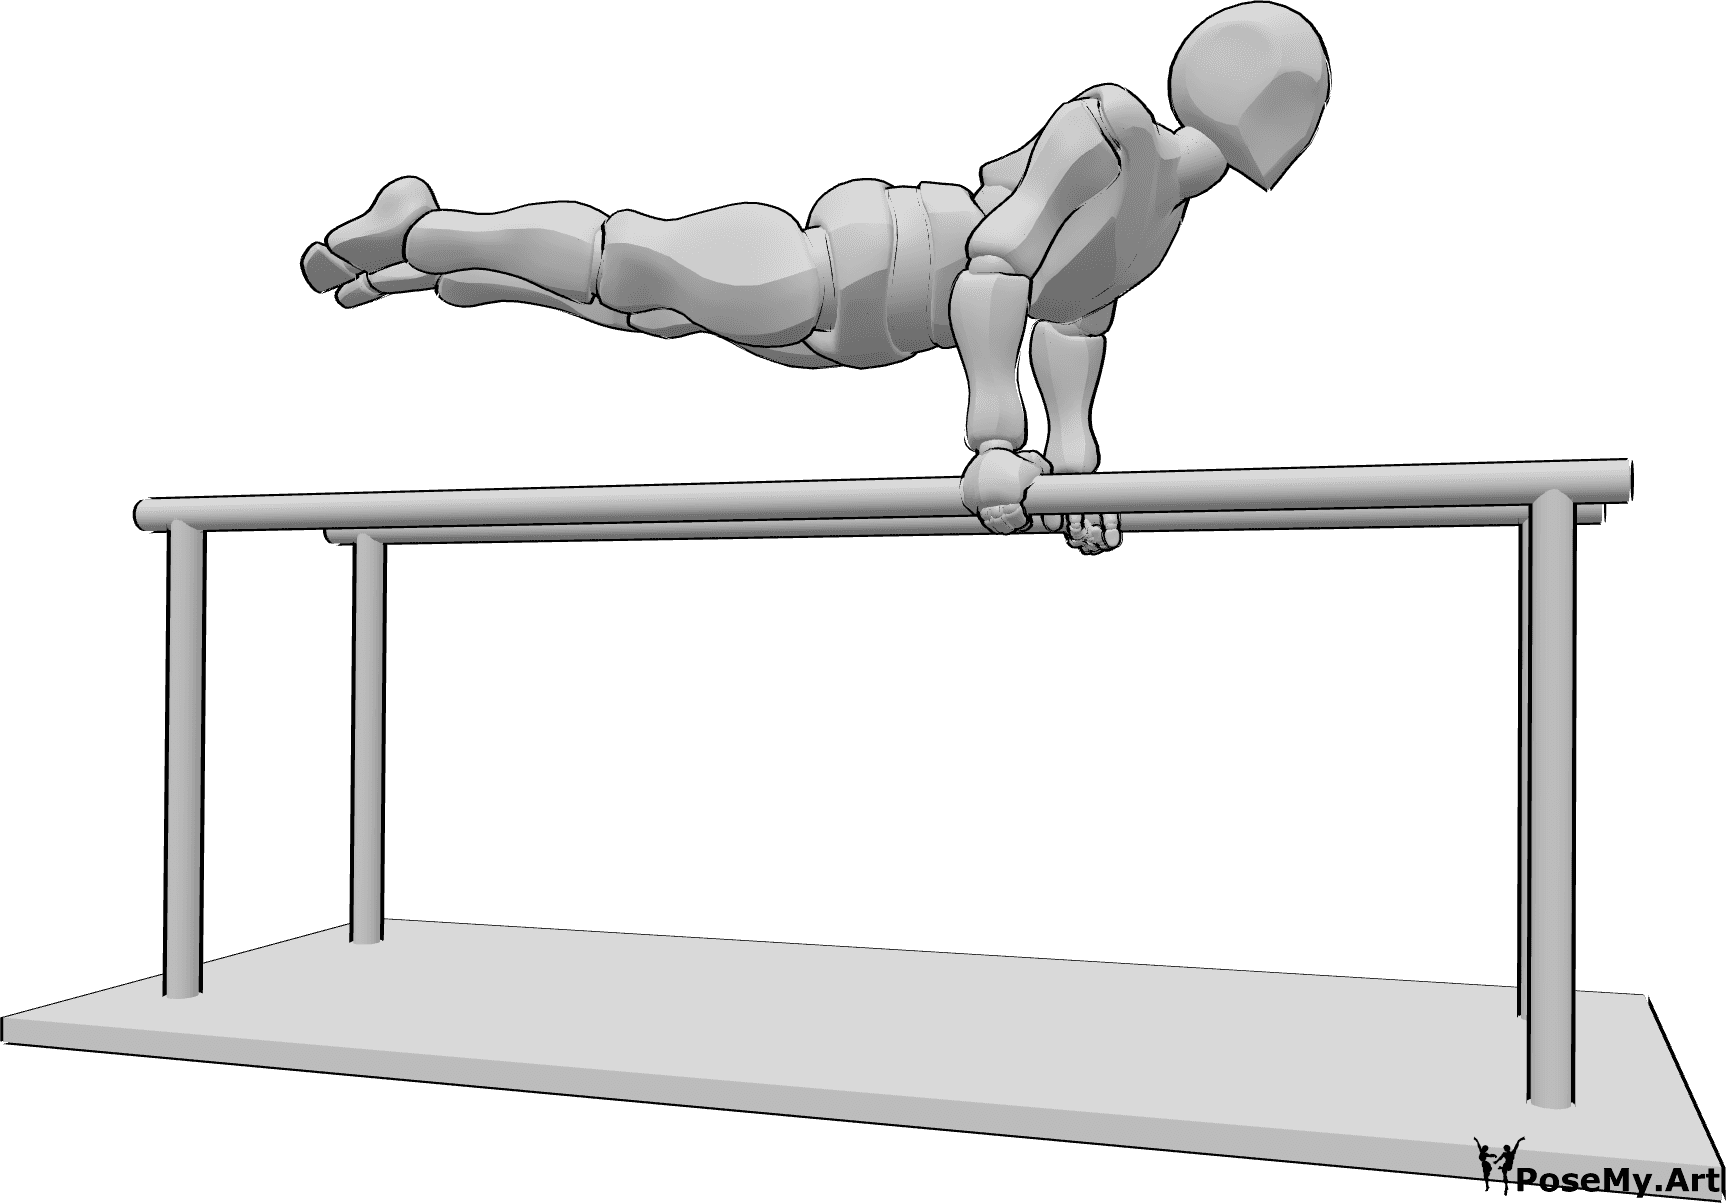 Referencia de poses- Postura de pie en barras paralelas - Varón haciendo gimnasia en las barras paralelas, parado de manos y manteniendo el cuerpo recto en el aire horizontalmente.